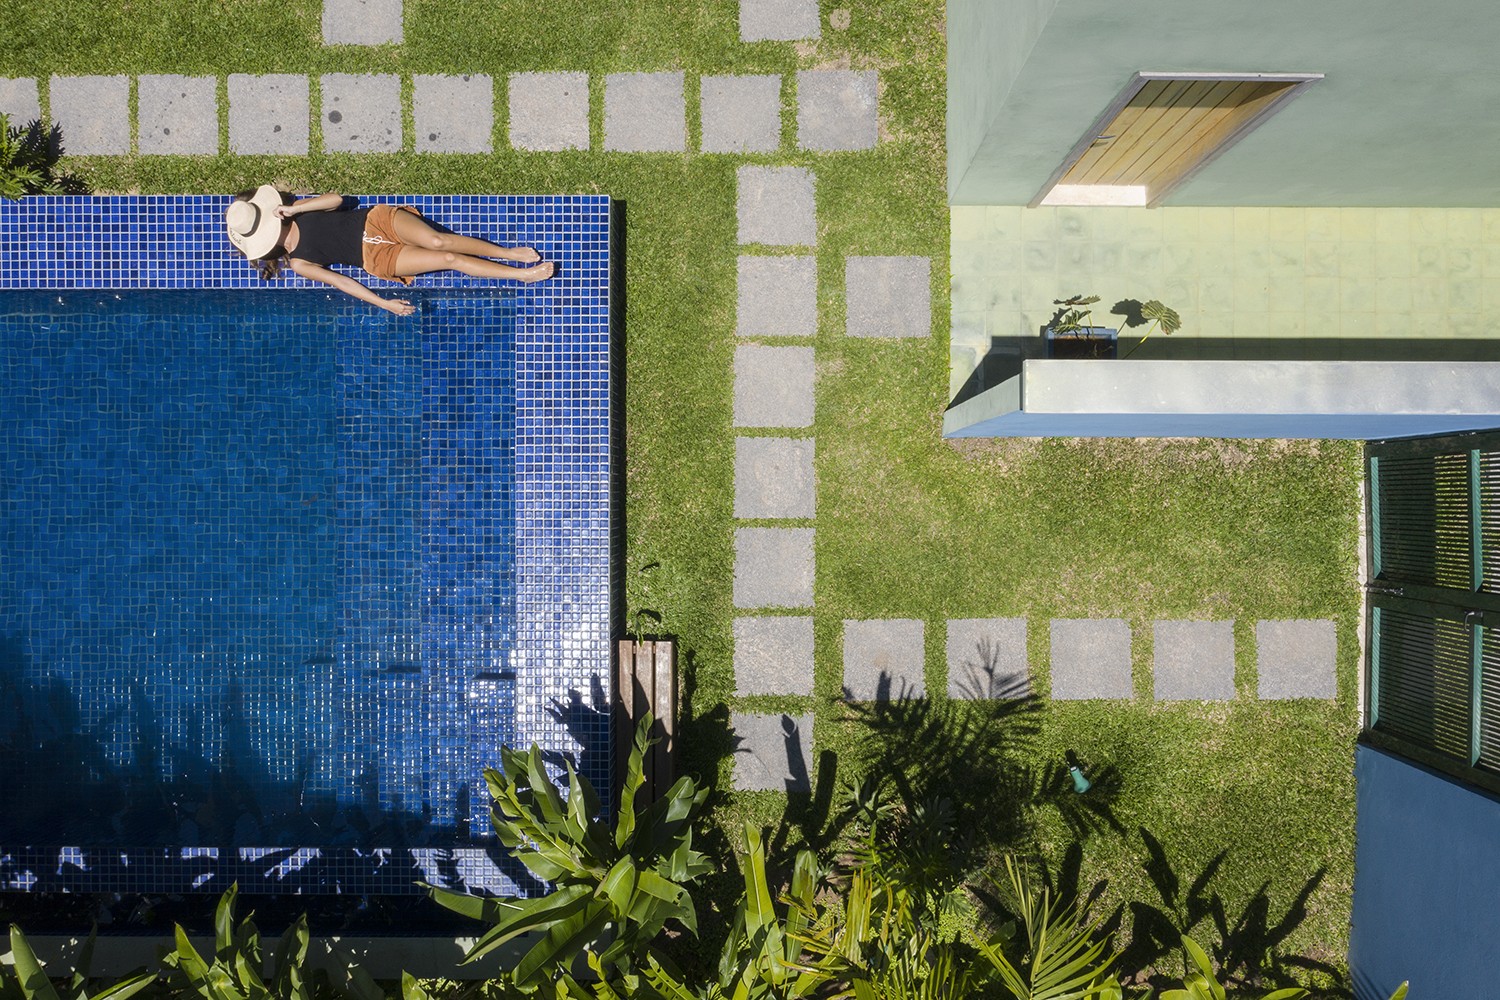 PISCINA | Os ladrilhos Jatobá da piscina se destacam no gramado verde (Foto: Carolina Lacaz / Divulgação)